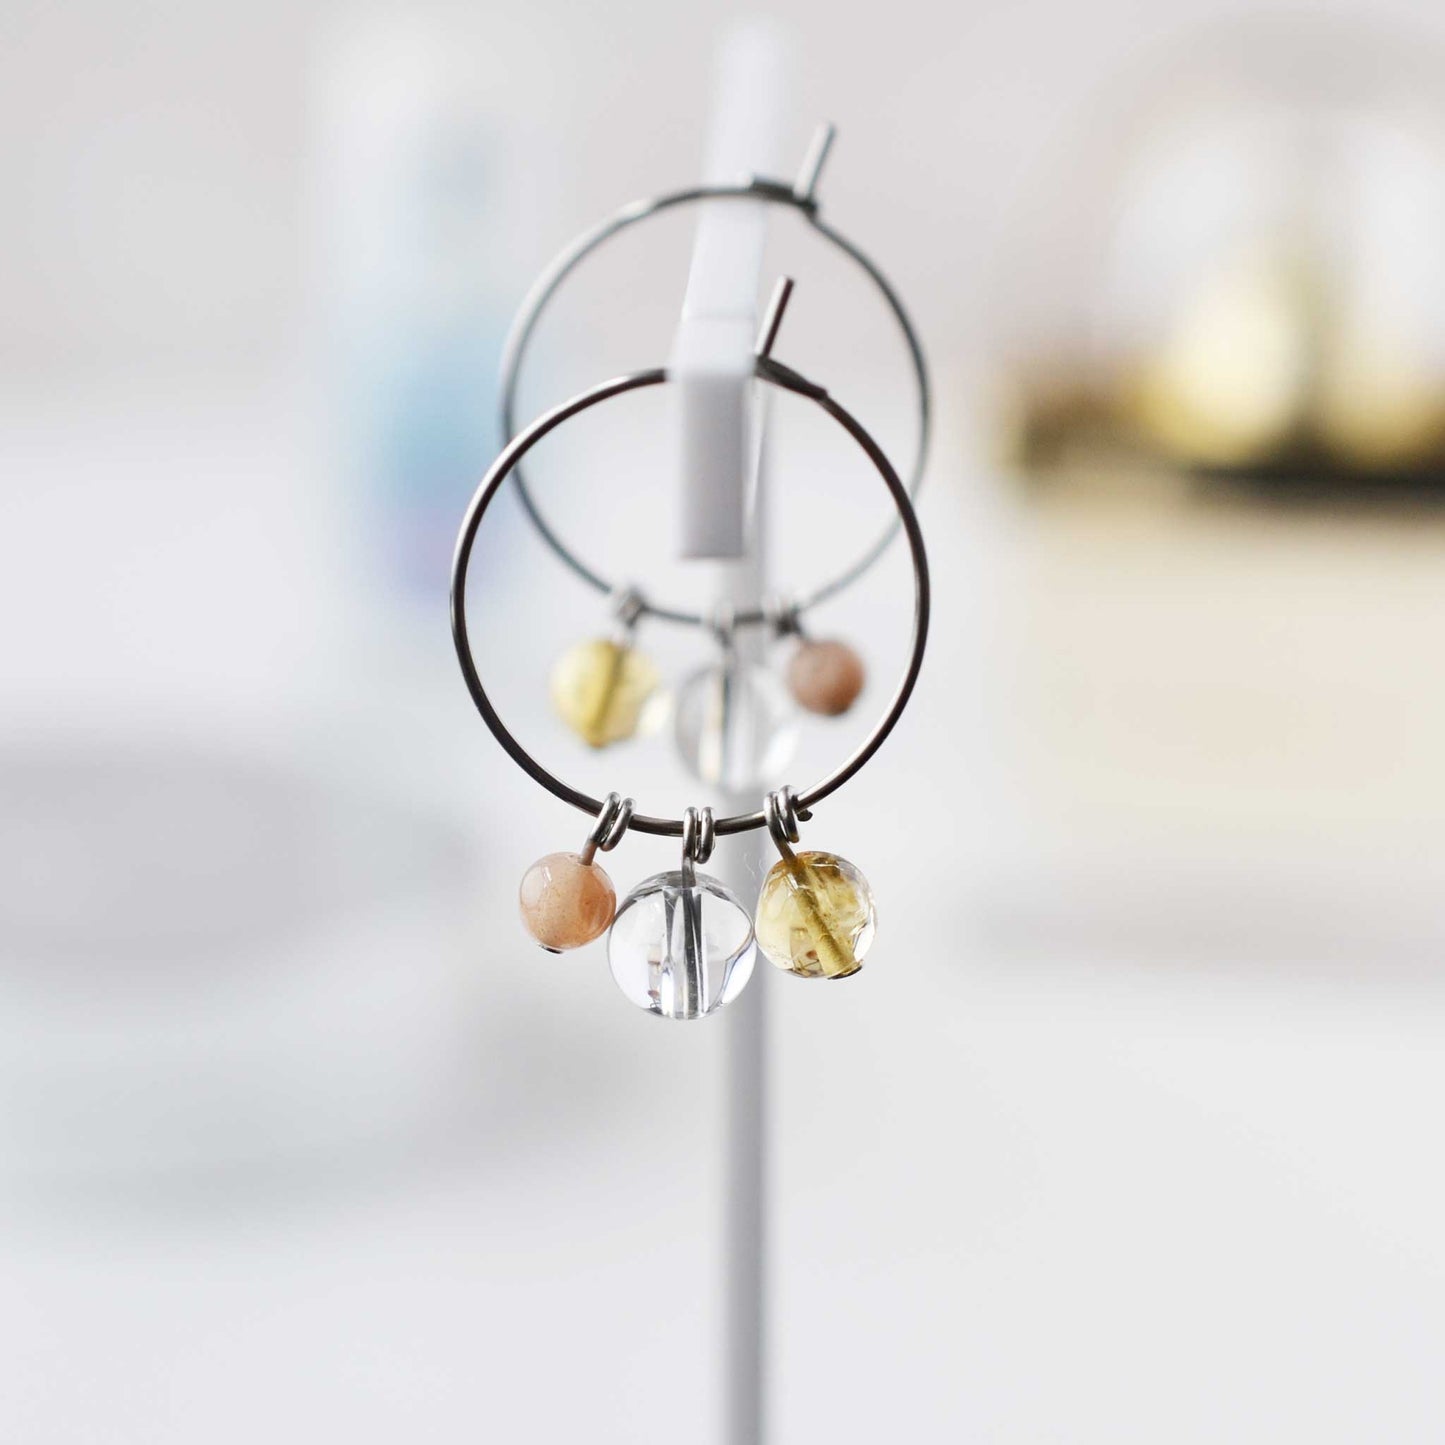 Yellow gemstone hoop earrings hanging against soft focus background